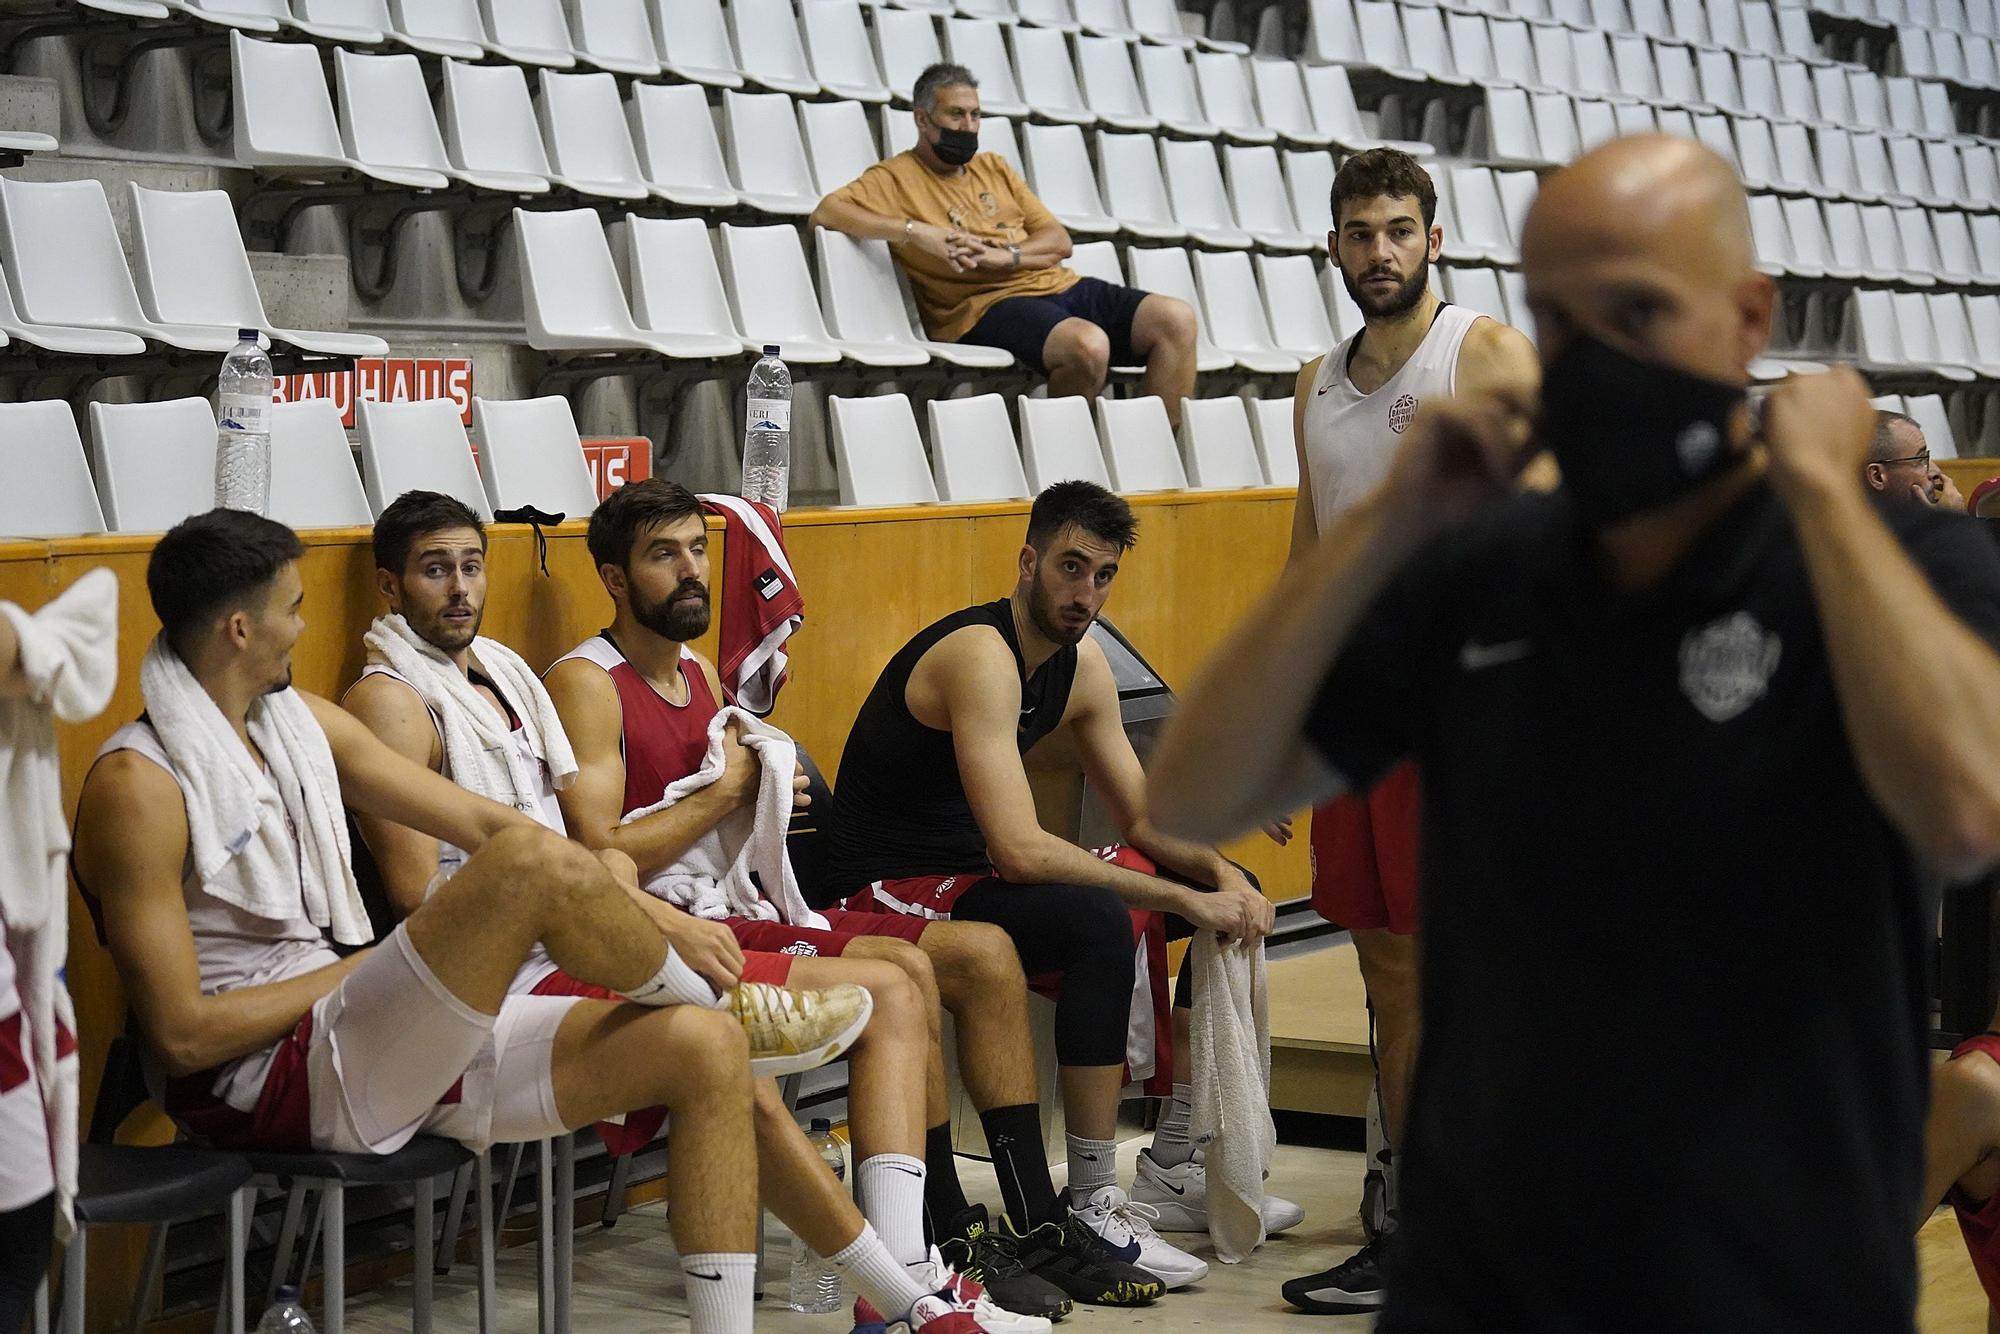 El Bàsquet Girona compta els dies per competir de nou